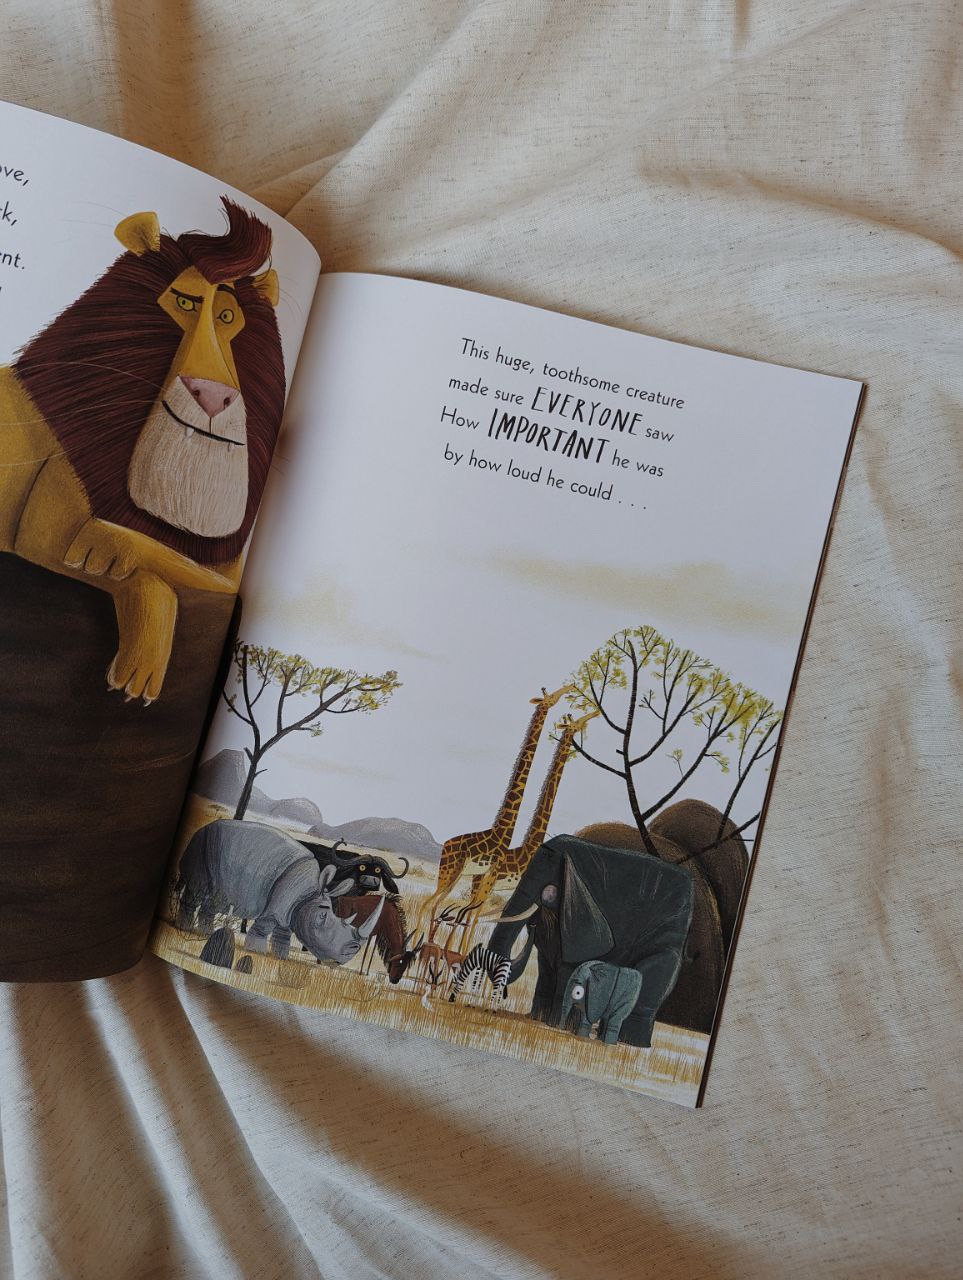 Lion Inside by Rachel Bright